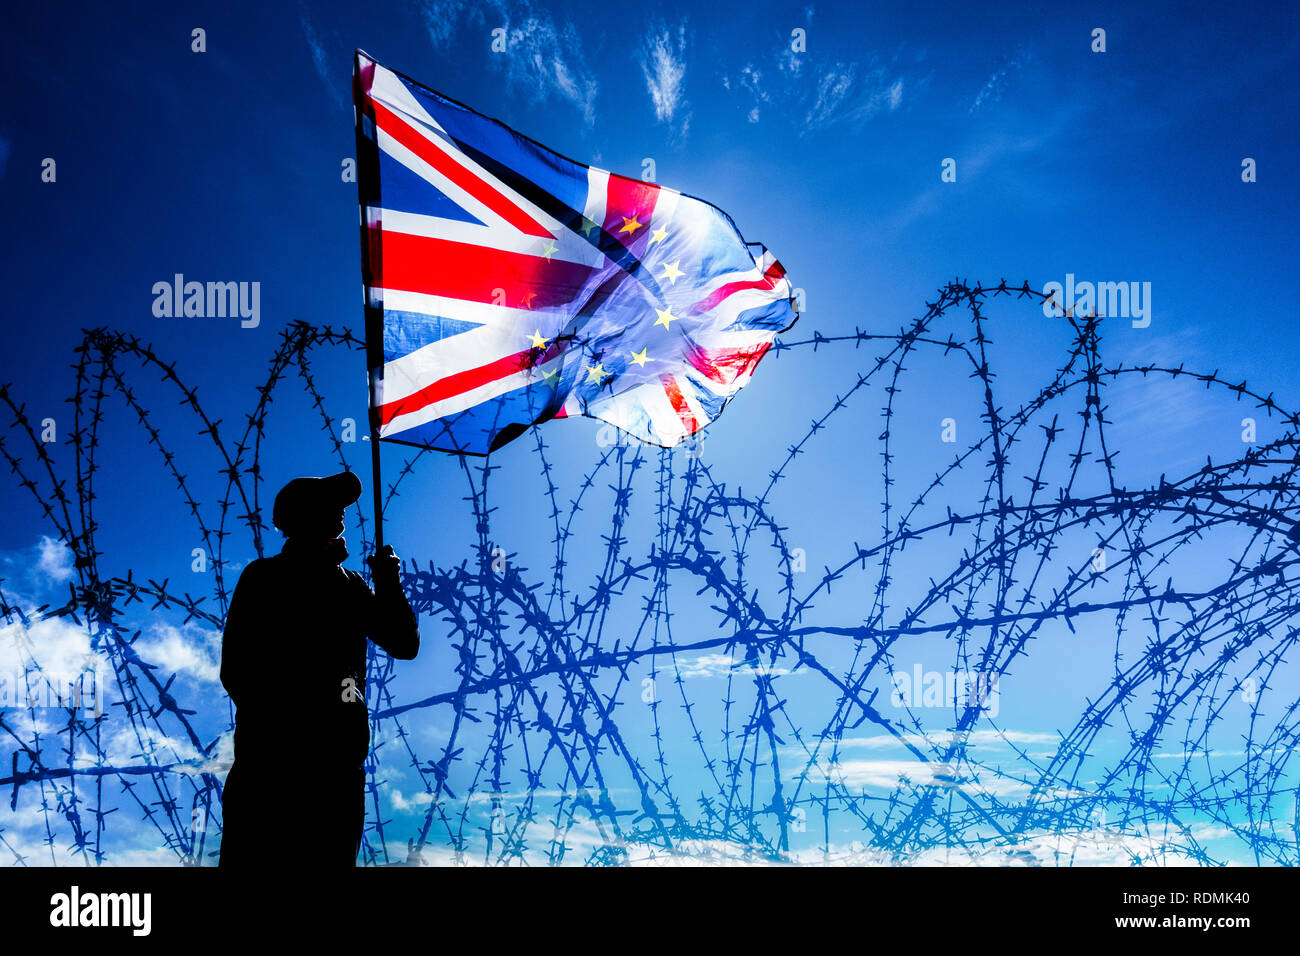 Hombre ondeando la bandera Union Jack/UE detrás de una alambrada fence: Brexit, asilo, inmigración, control de fronteras...La imagen concepto Foto de stock